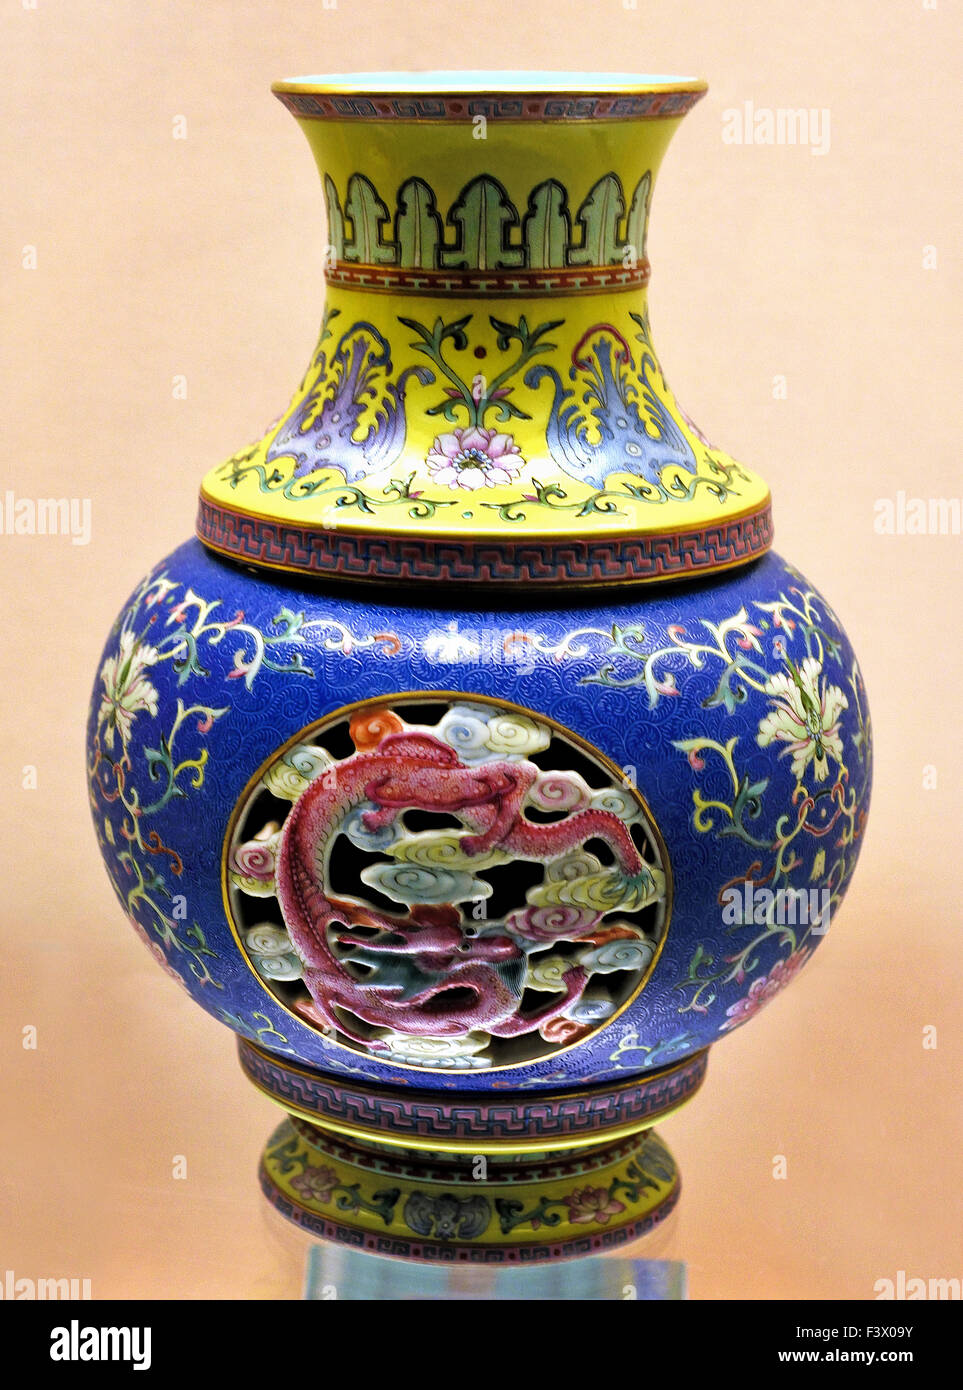 Openwork girevole di vaso con Design Fencai Jingdezhen Ware Qianlong regnare ( 1736 - 1795 AD ) Dinastia Qing al Museo di Shanghai di Antica Arte Cinese Antica Cina Foto Stock